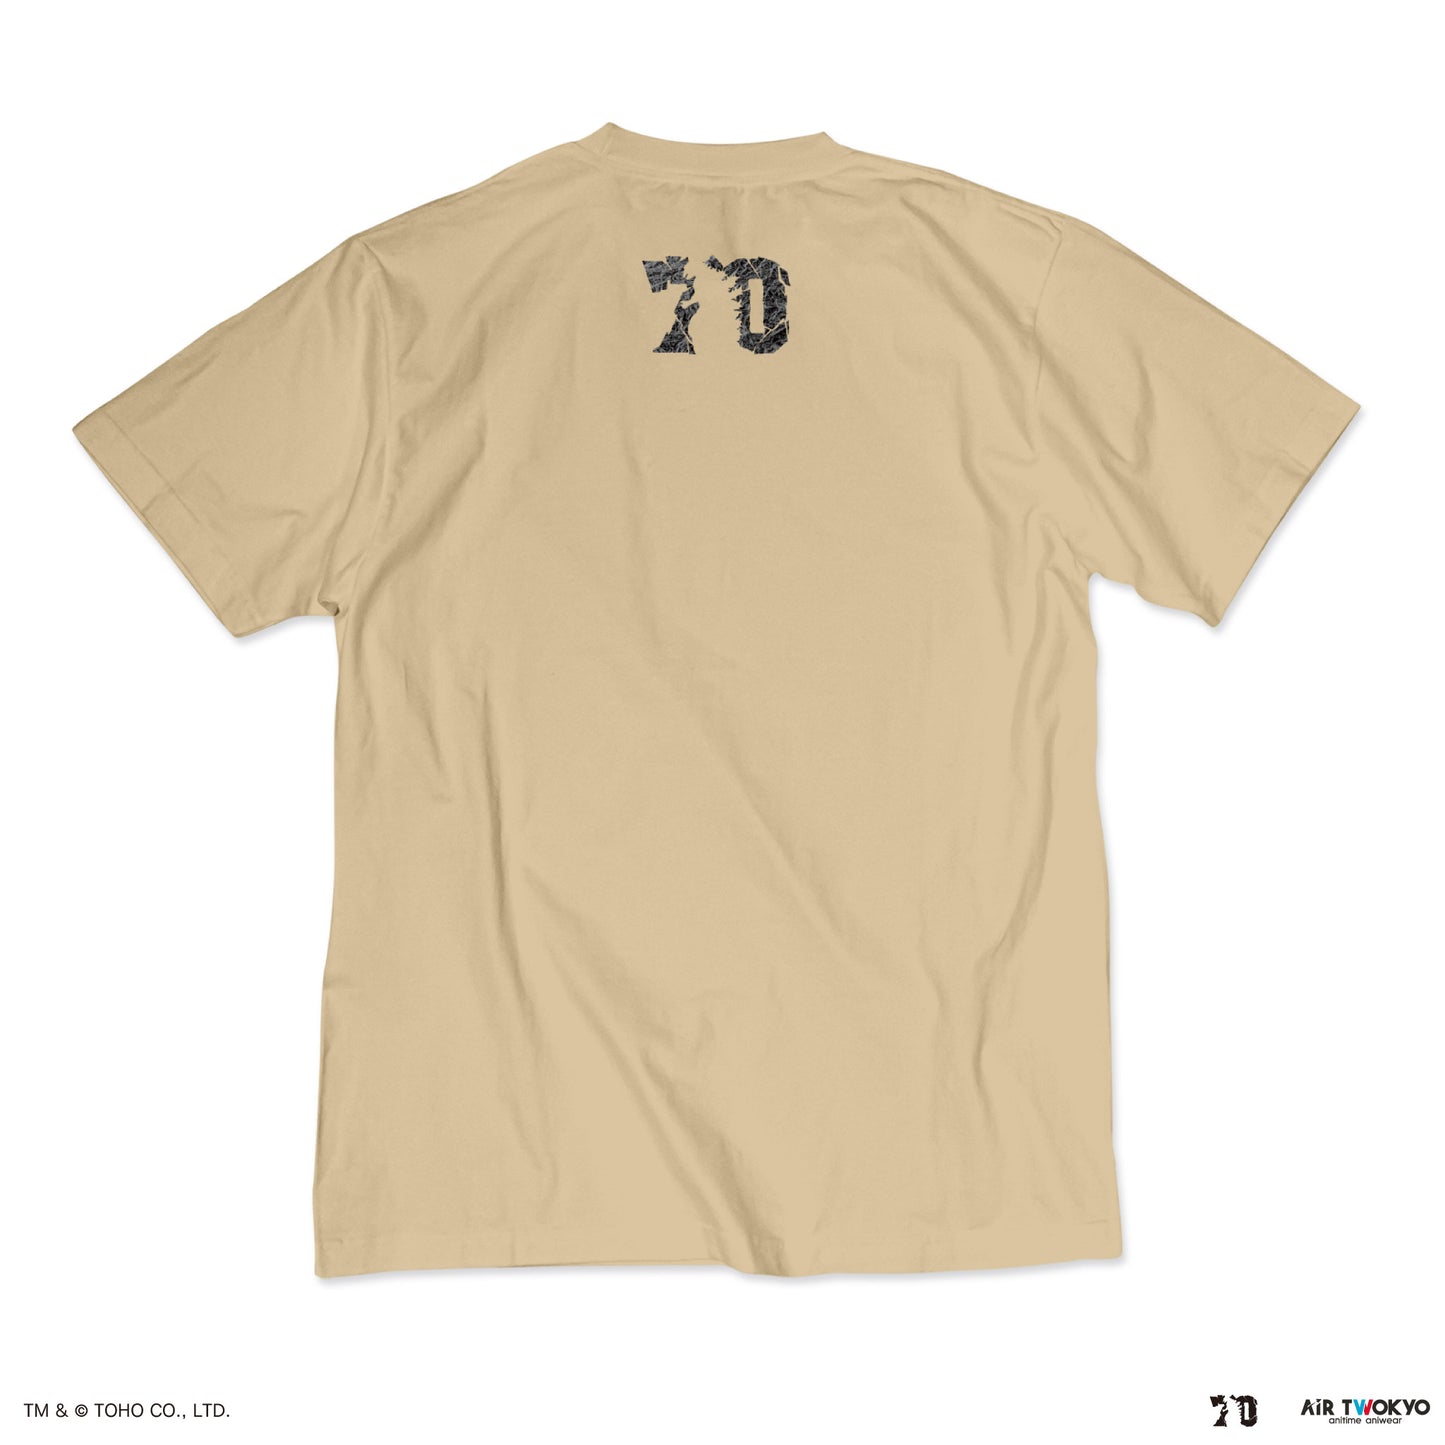 ゴジラ70周年記念『ゴジラ-1.0』シーンイラストTシャツ3（ゴジラ銀座襲来）